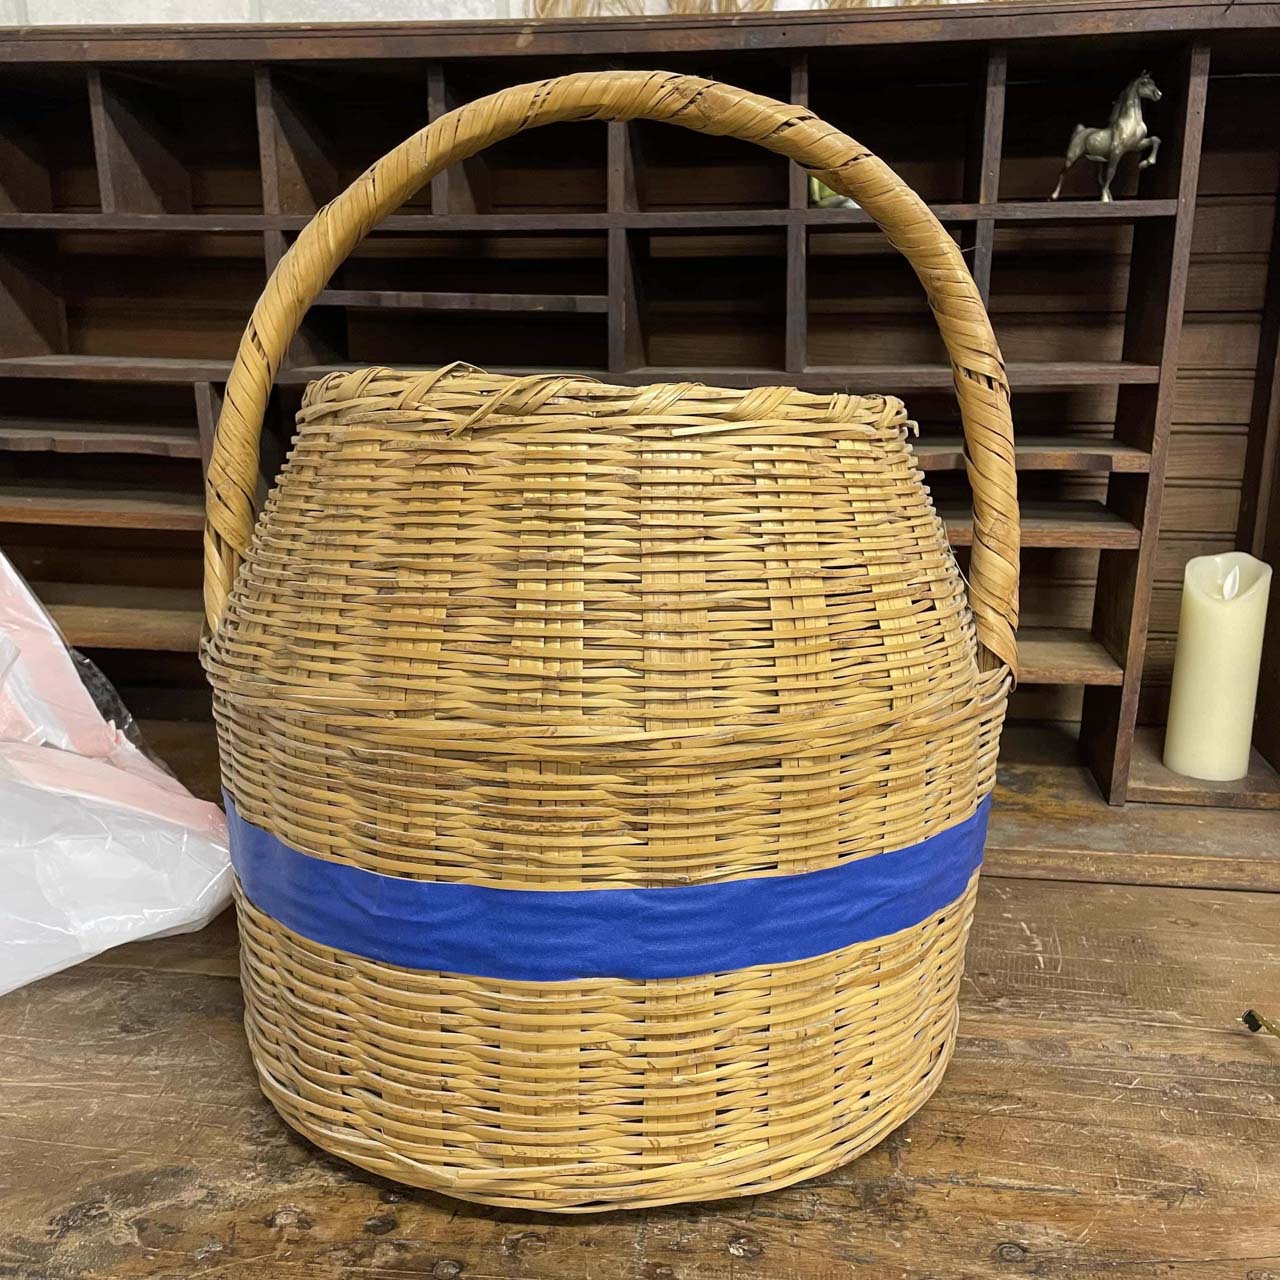  Como pintar uma cesta velha